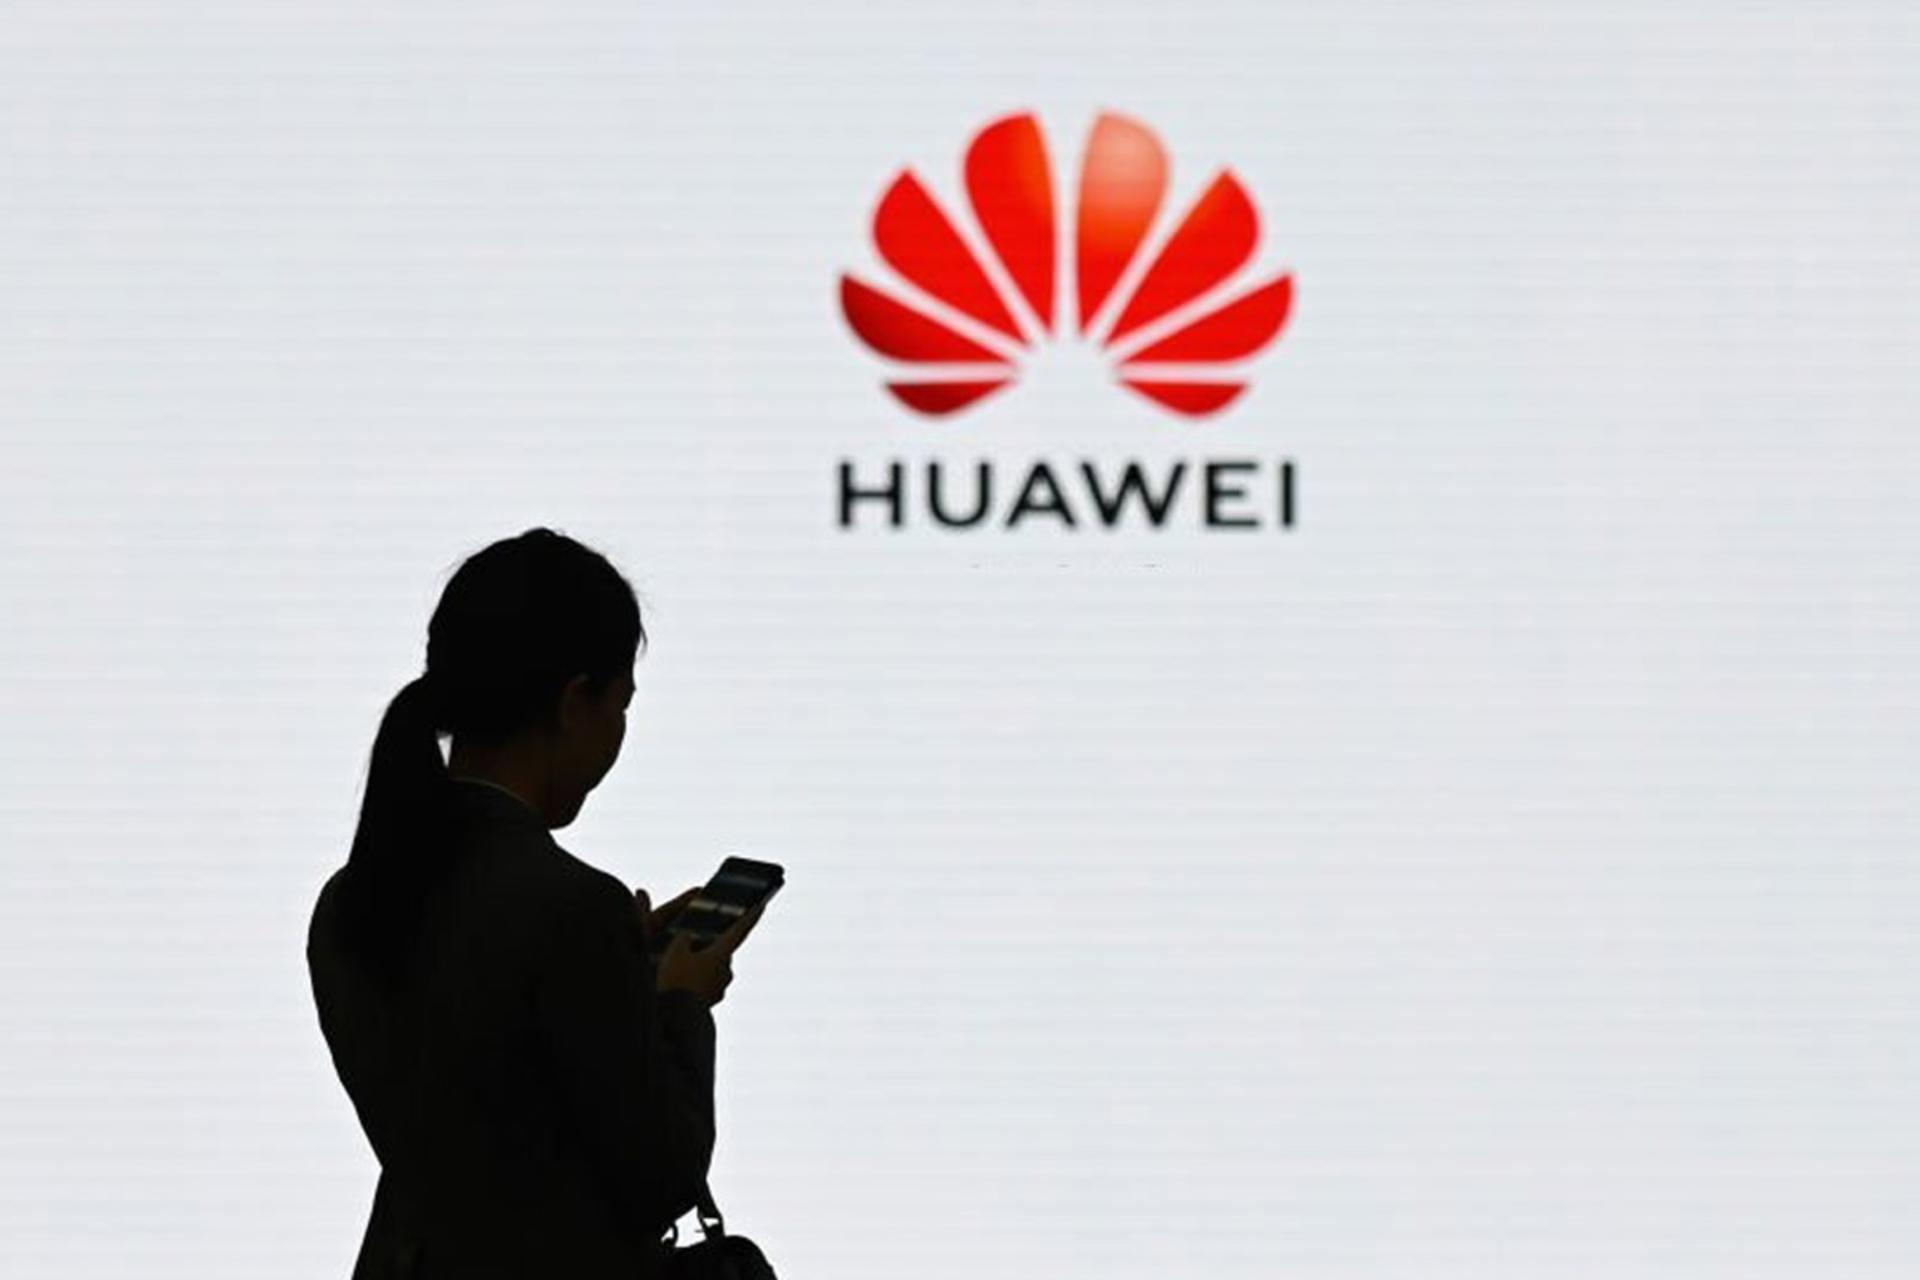 یک زن در حال استفاده از گوشی در برابر لوگو هواوی Huawei